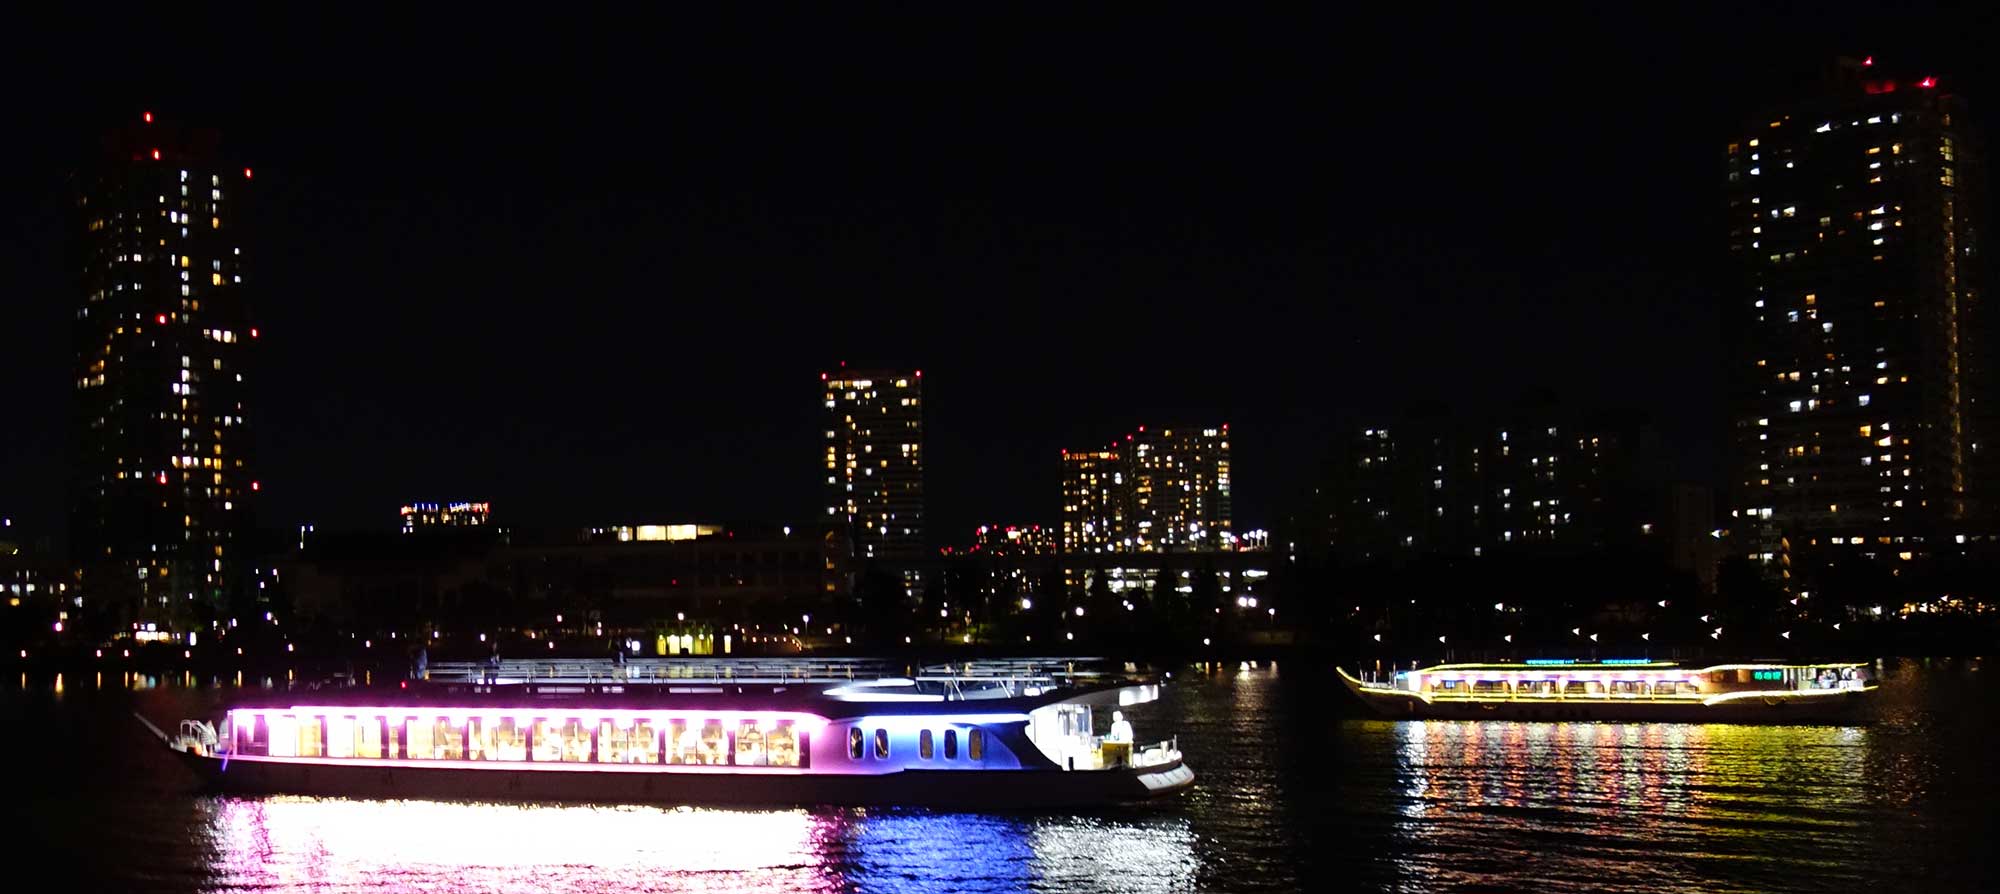 Традиционное судно-ресторанчик ятака-бунэ в Токийском заливе на фоне ночного города